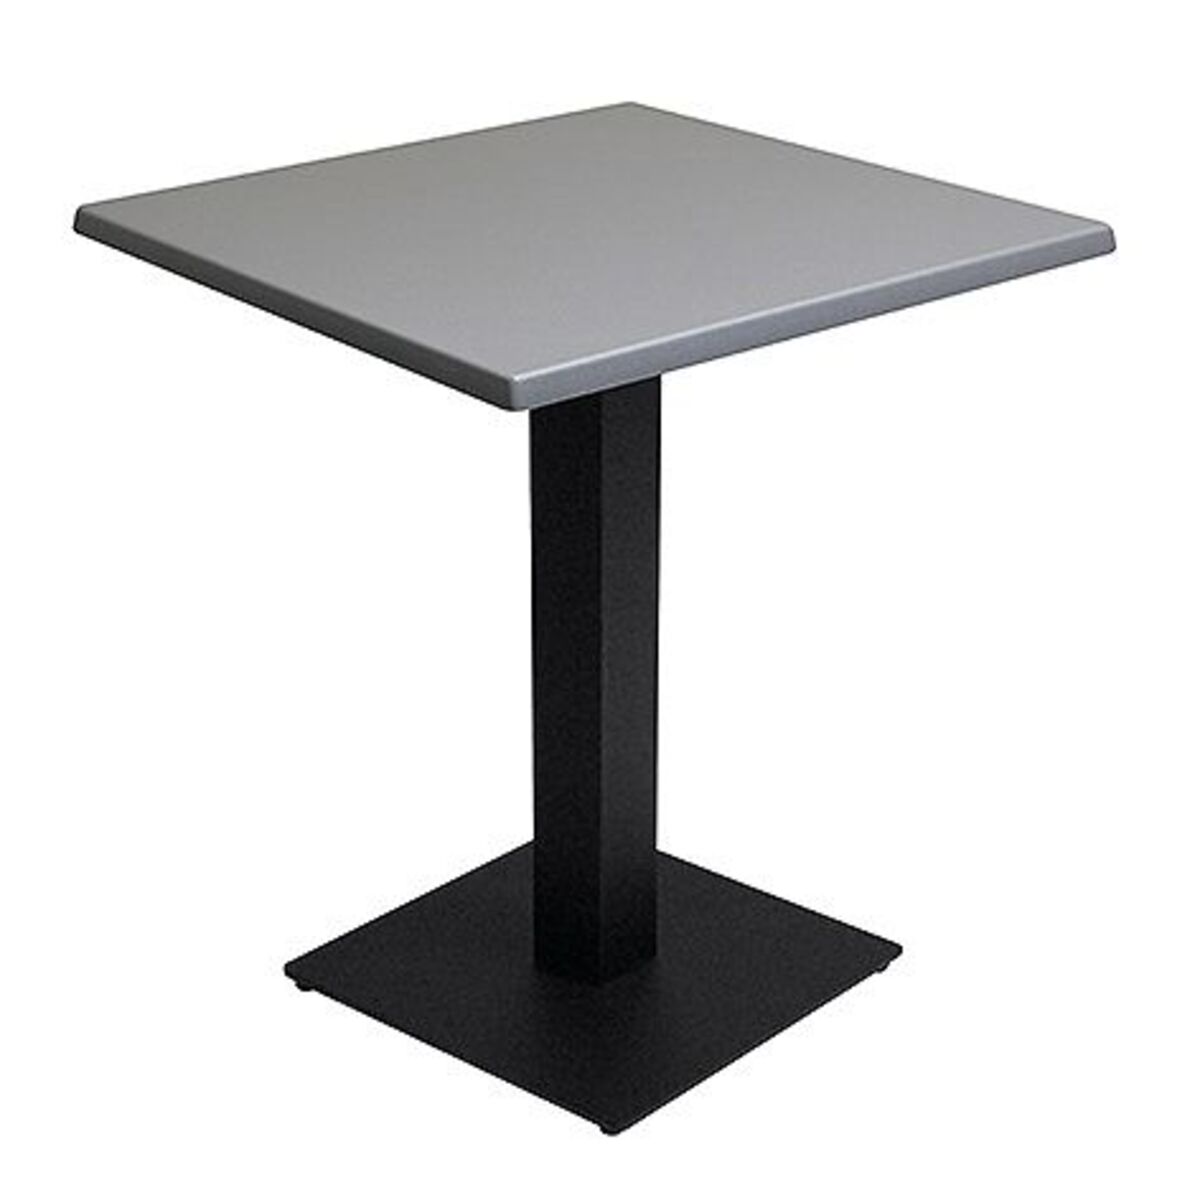 Table intérieure pied noir base carrée & plateau werzalit gris 70x70 cm